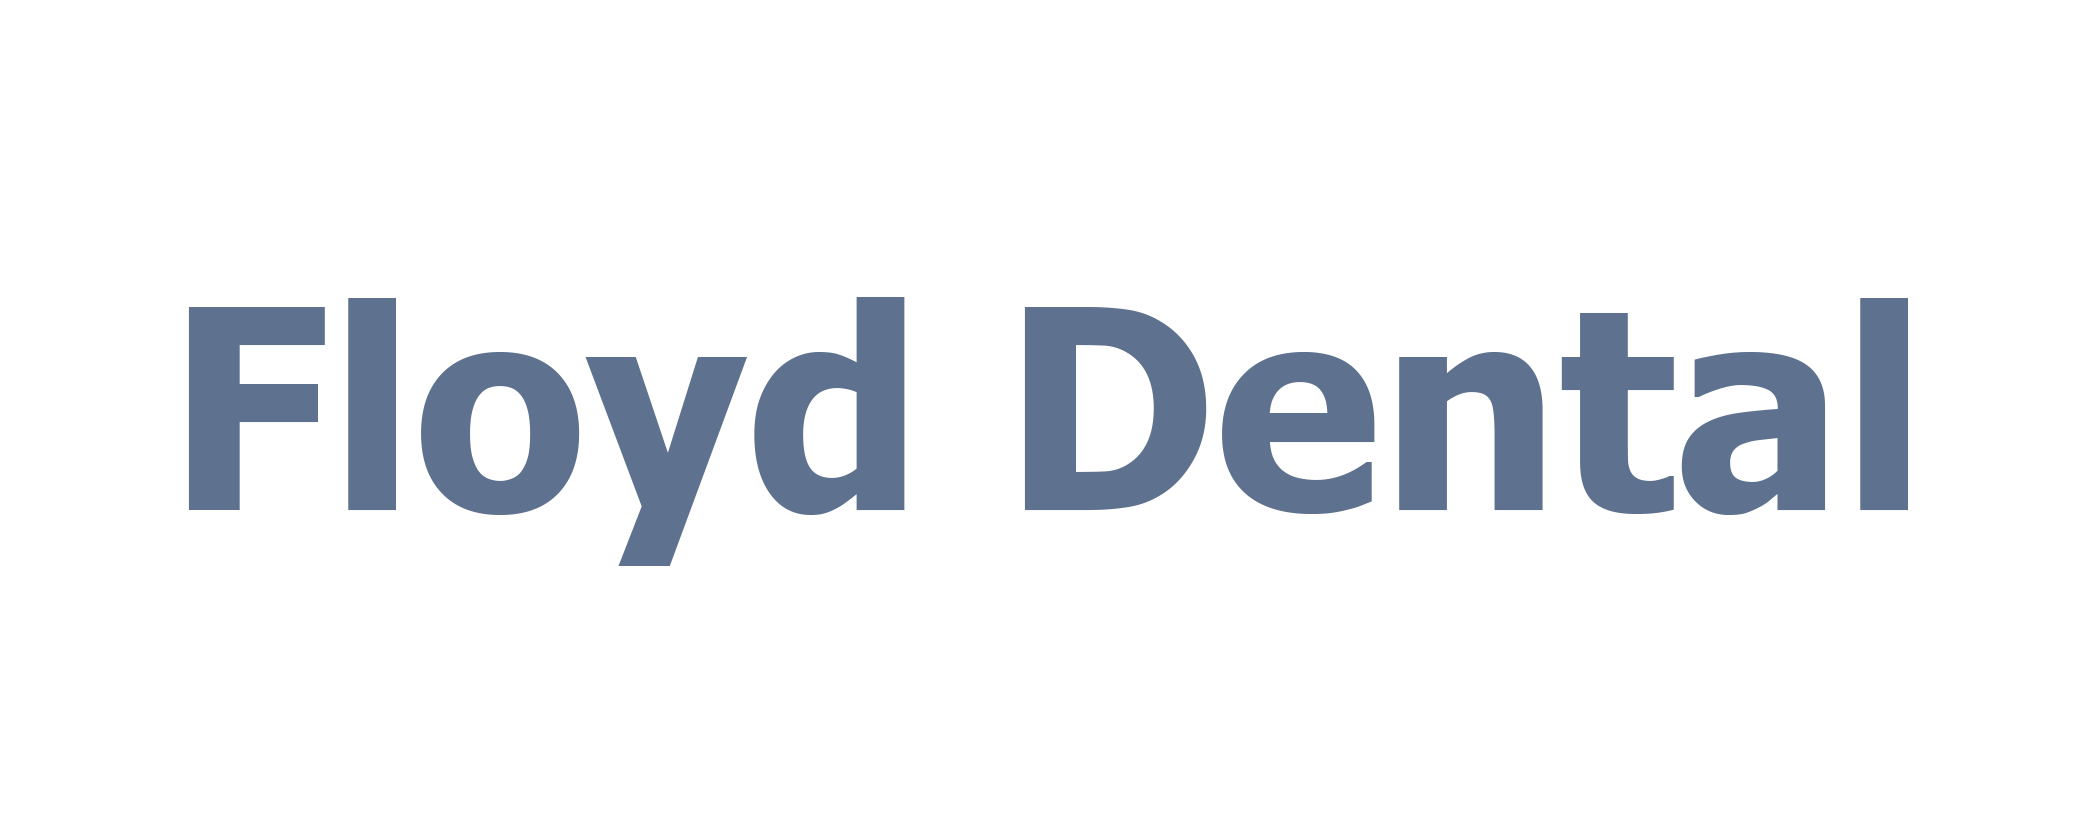 Dentist- Springfield, IL - Floyd Dental